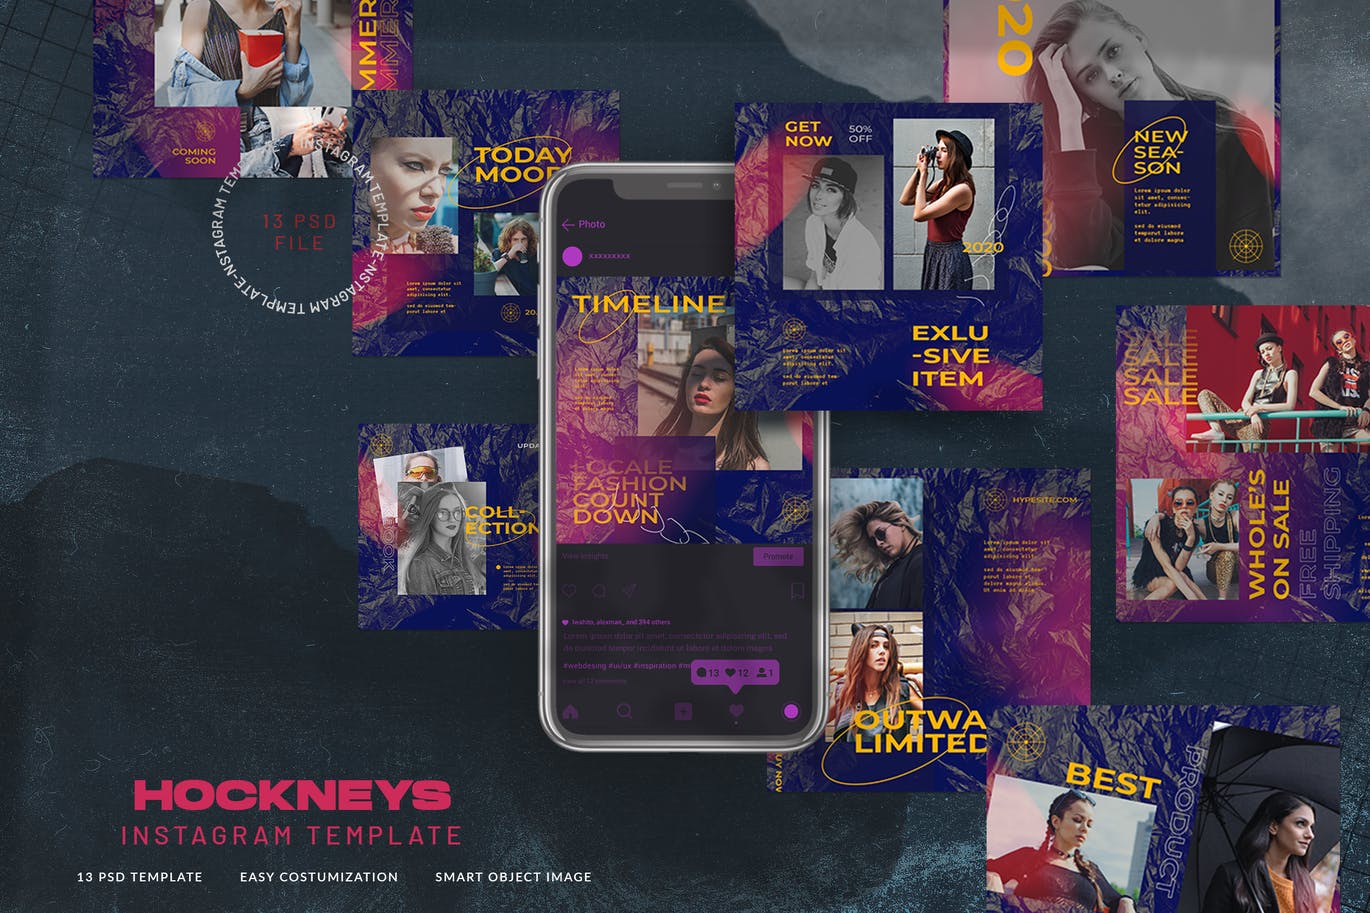 时尚 都市 风格 女性 主题Instagram故事社交素材 Hockneys Instagram Stories Urban Fashion Style设计素材模板